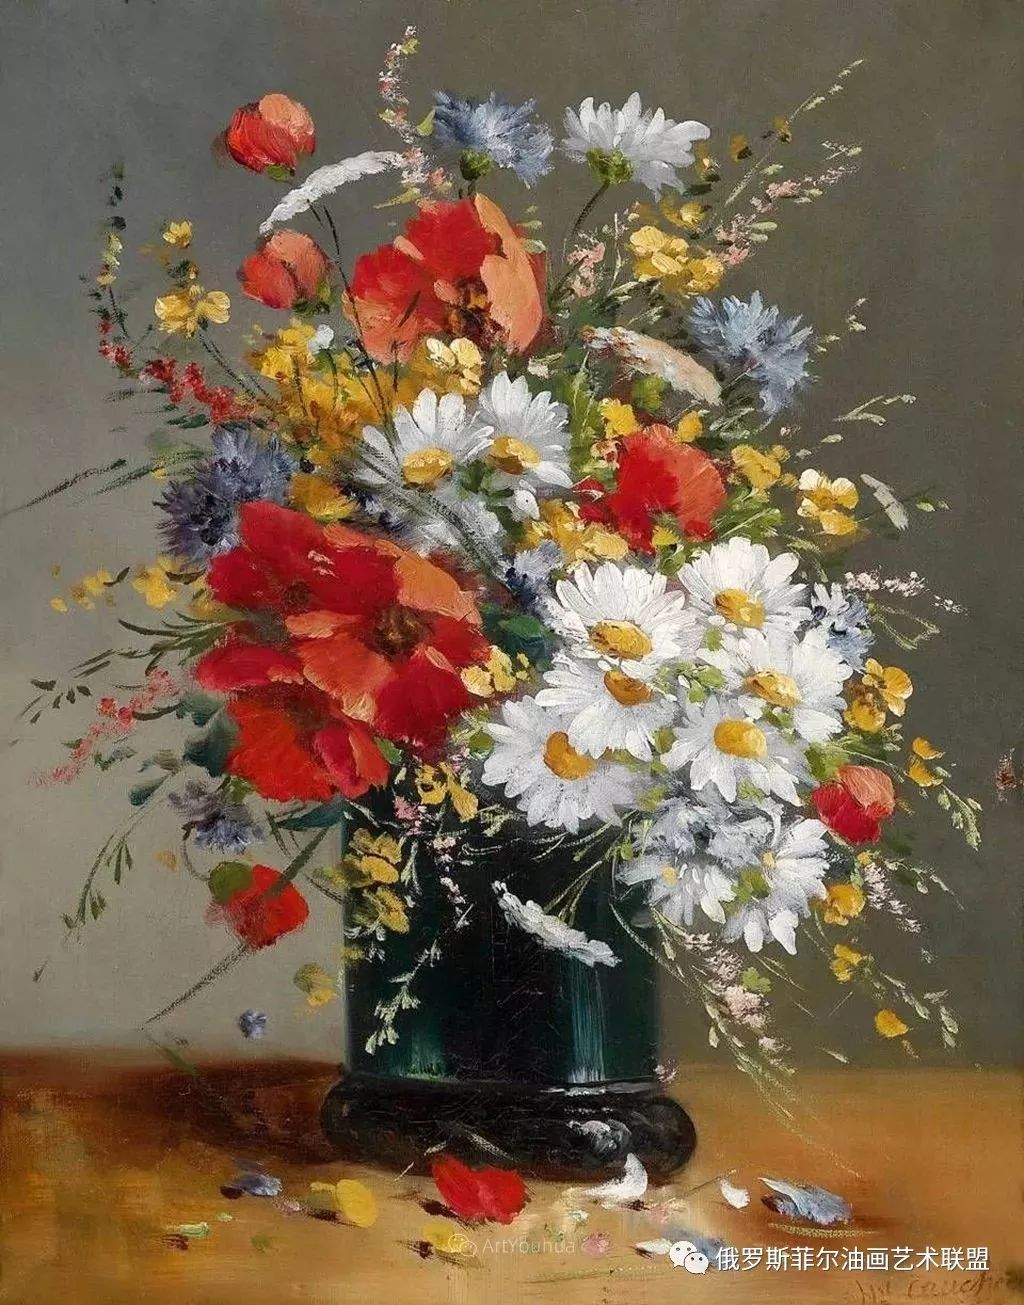 法国画家尤金·亨利·柯乔瓦花卉油画作品赏析